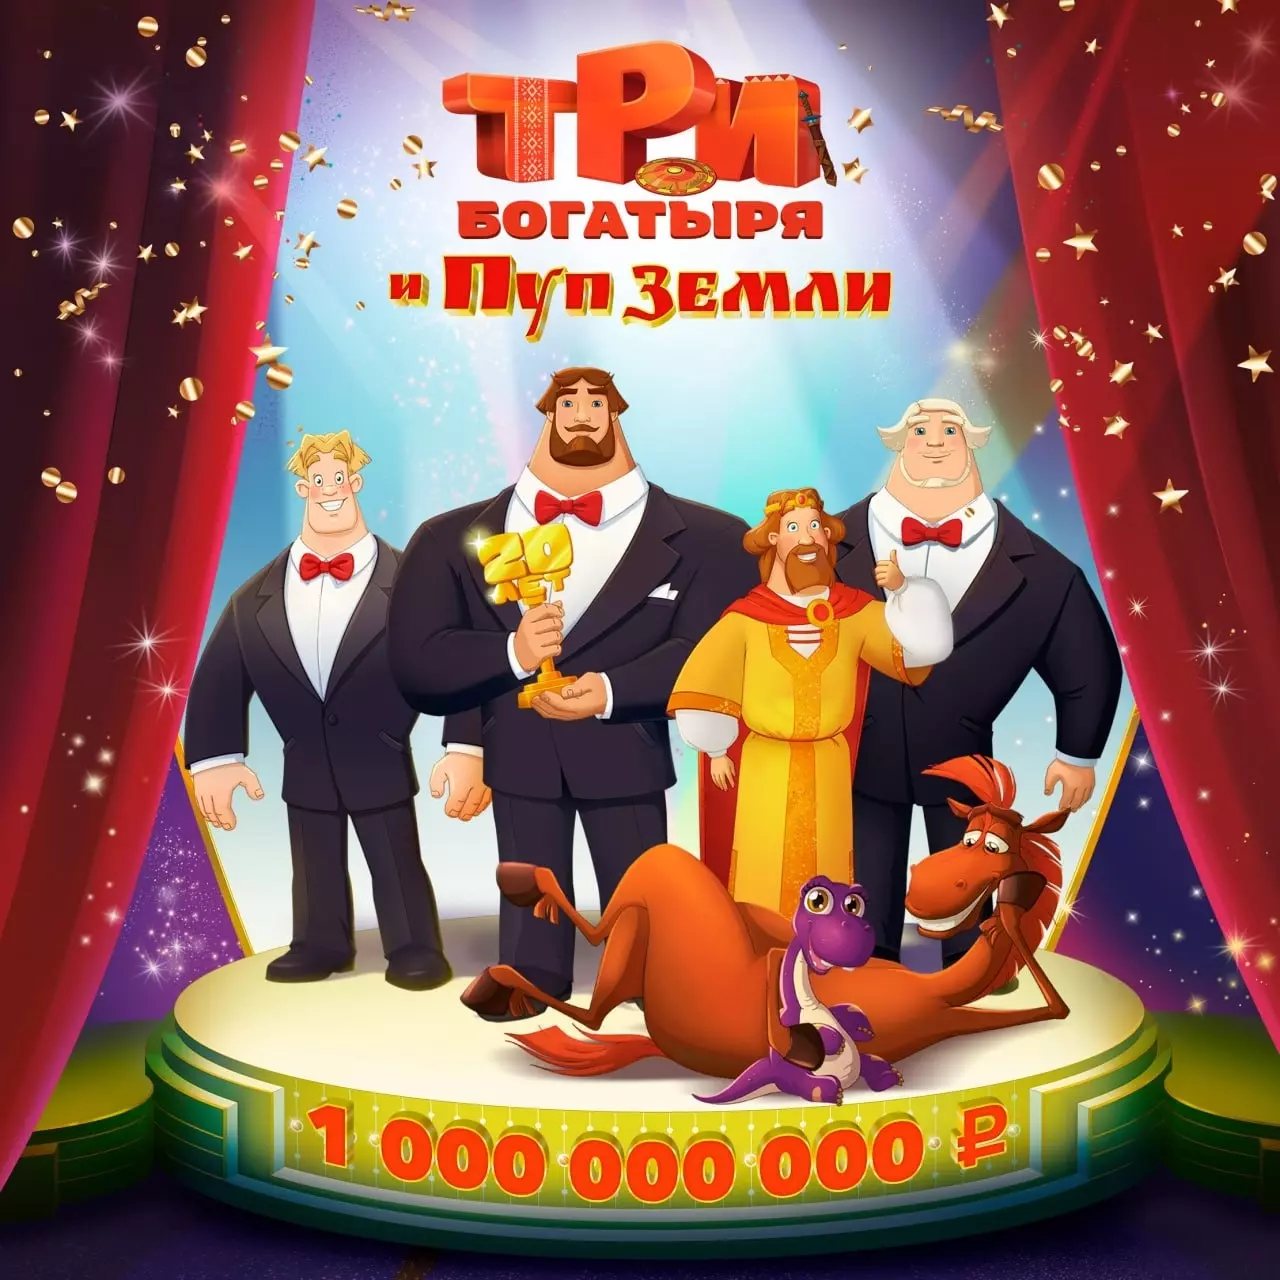 «Три Богатыря и Пуп Земли» на 20-летний юбилей франшизы, заработали 1 000 000 000 рублей кассовых сборов.